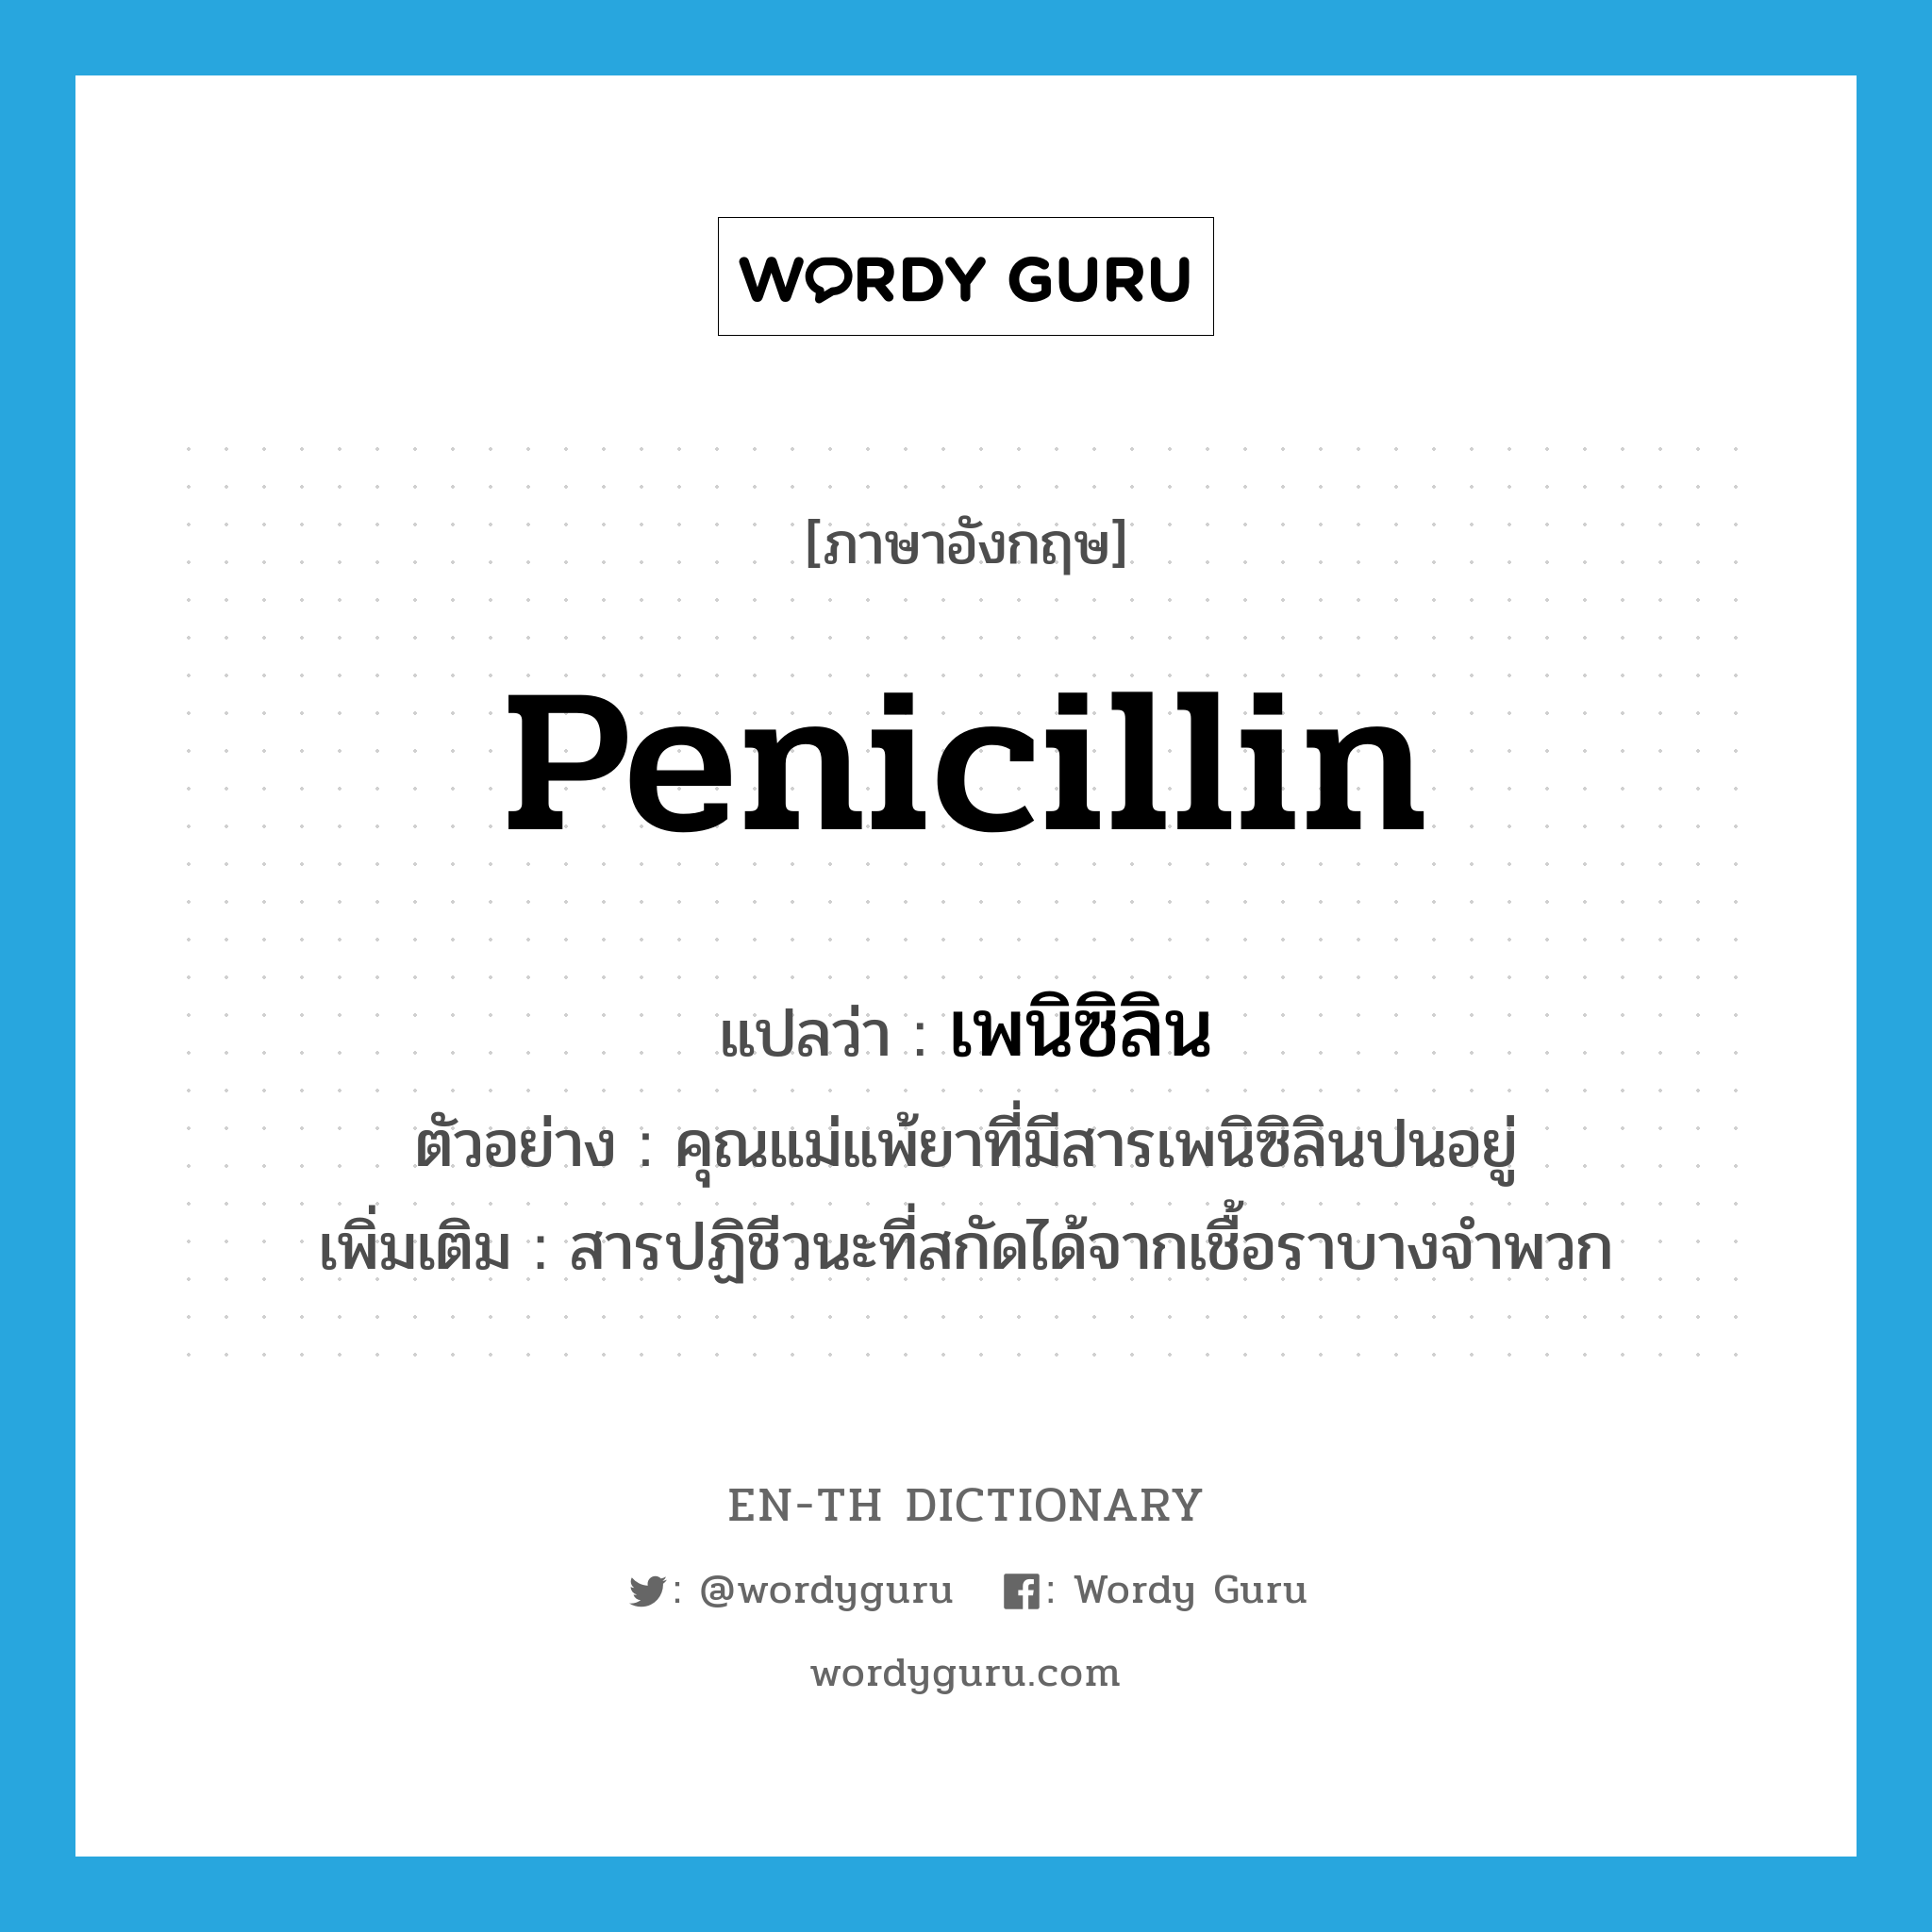 penicillin แปลว่า?, คำศัพท์ภาษาอังกฤษ penicillin แปลว่า เพนิซิลิน ประเภท N ตัวอย่าง คุณแม่แพ้ยาที่มีสารเพนิซิลินปนอยู่ เพิ่มเติม สารปฏิชีวนะที่สกัดได้จากเชื้อราบางจำพวก หมวด N